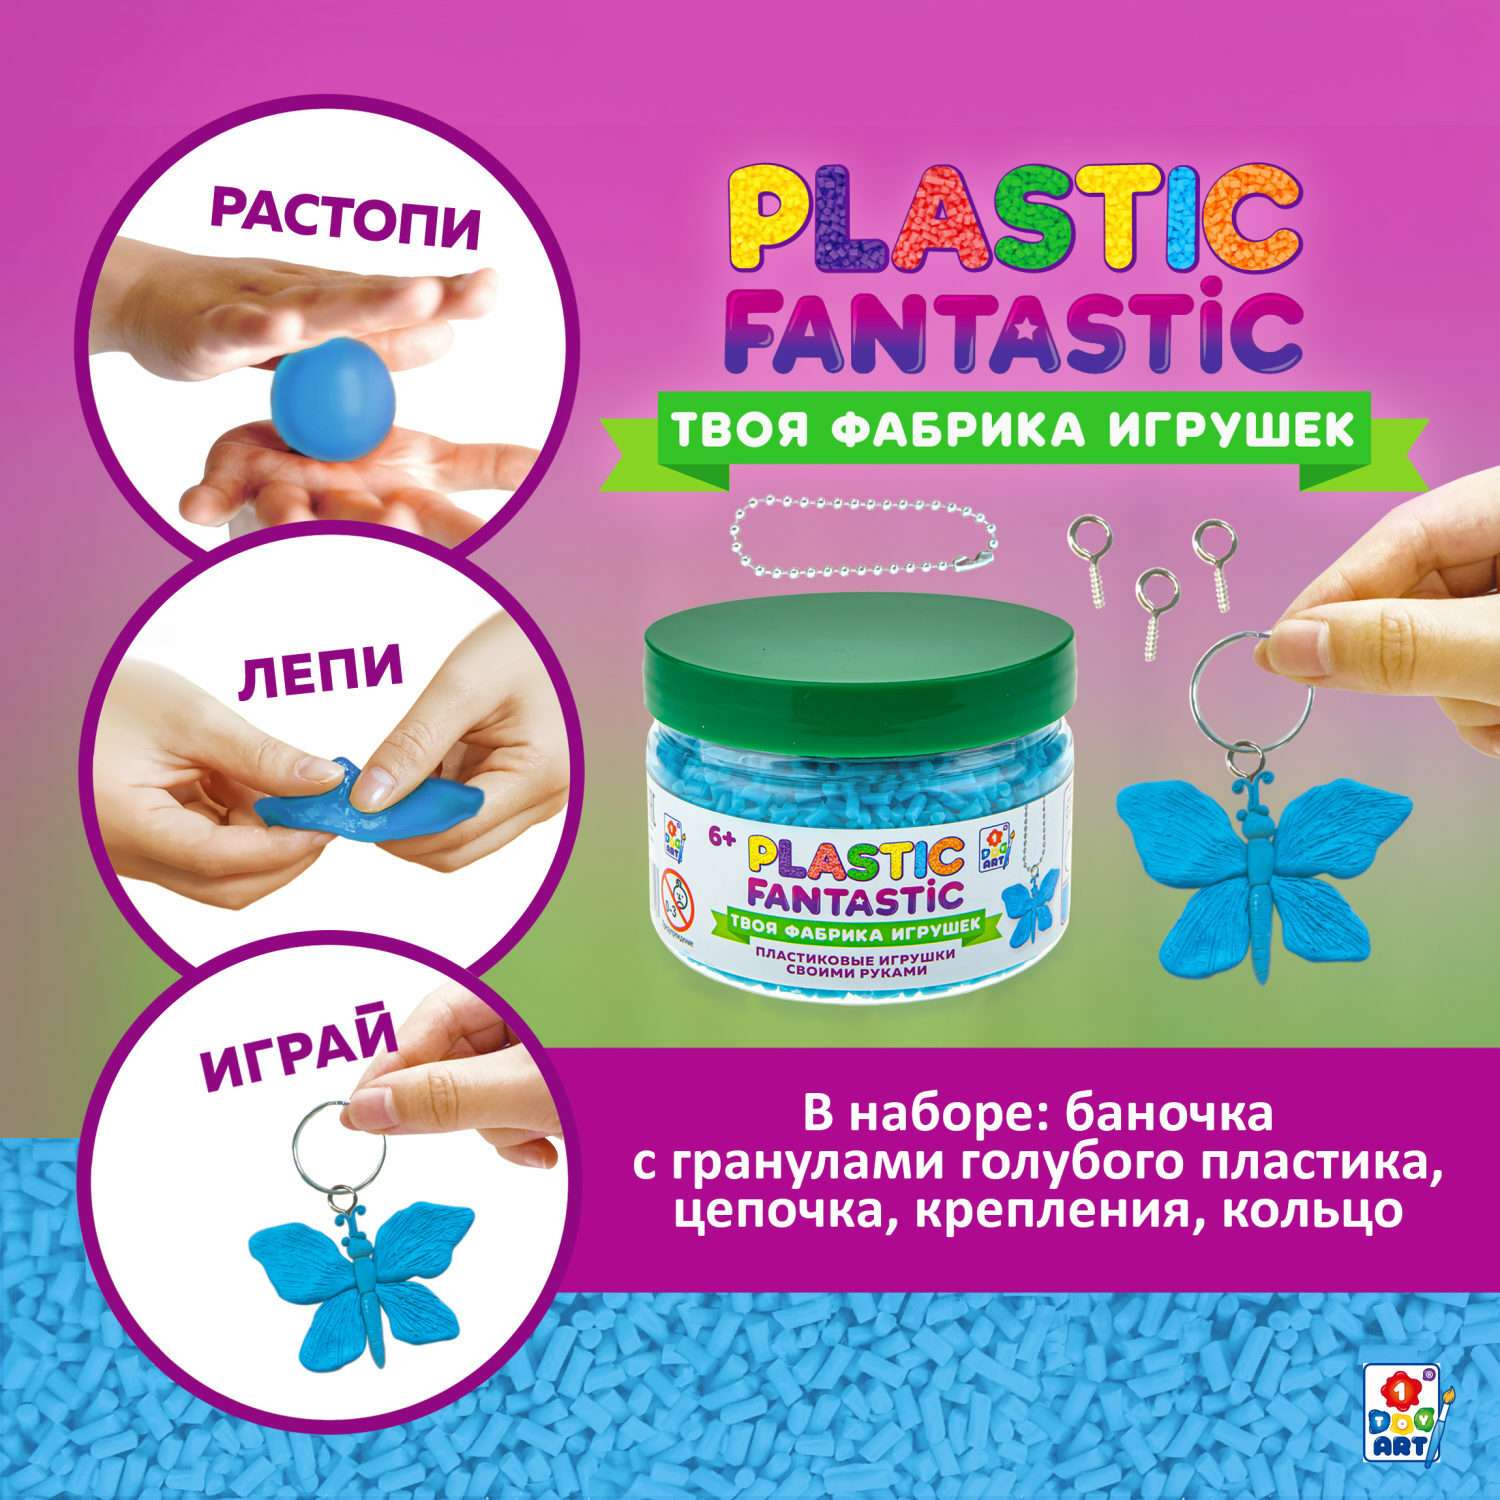 Набор для творчества Plastic Fantastic Гранулированный пластик голубой - фото 2